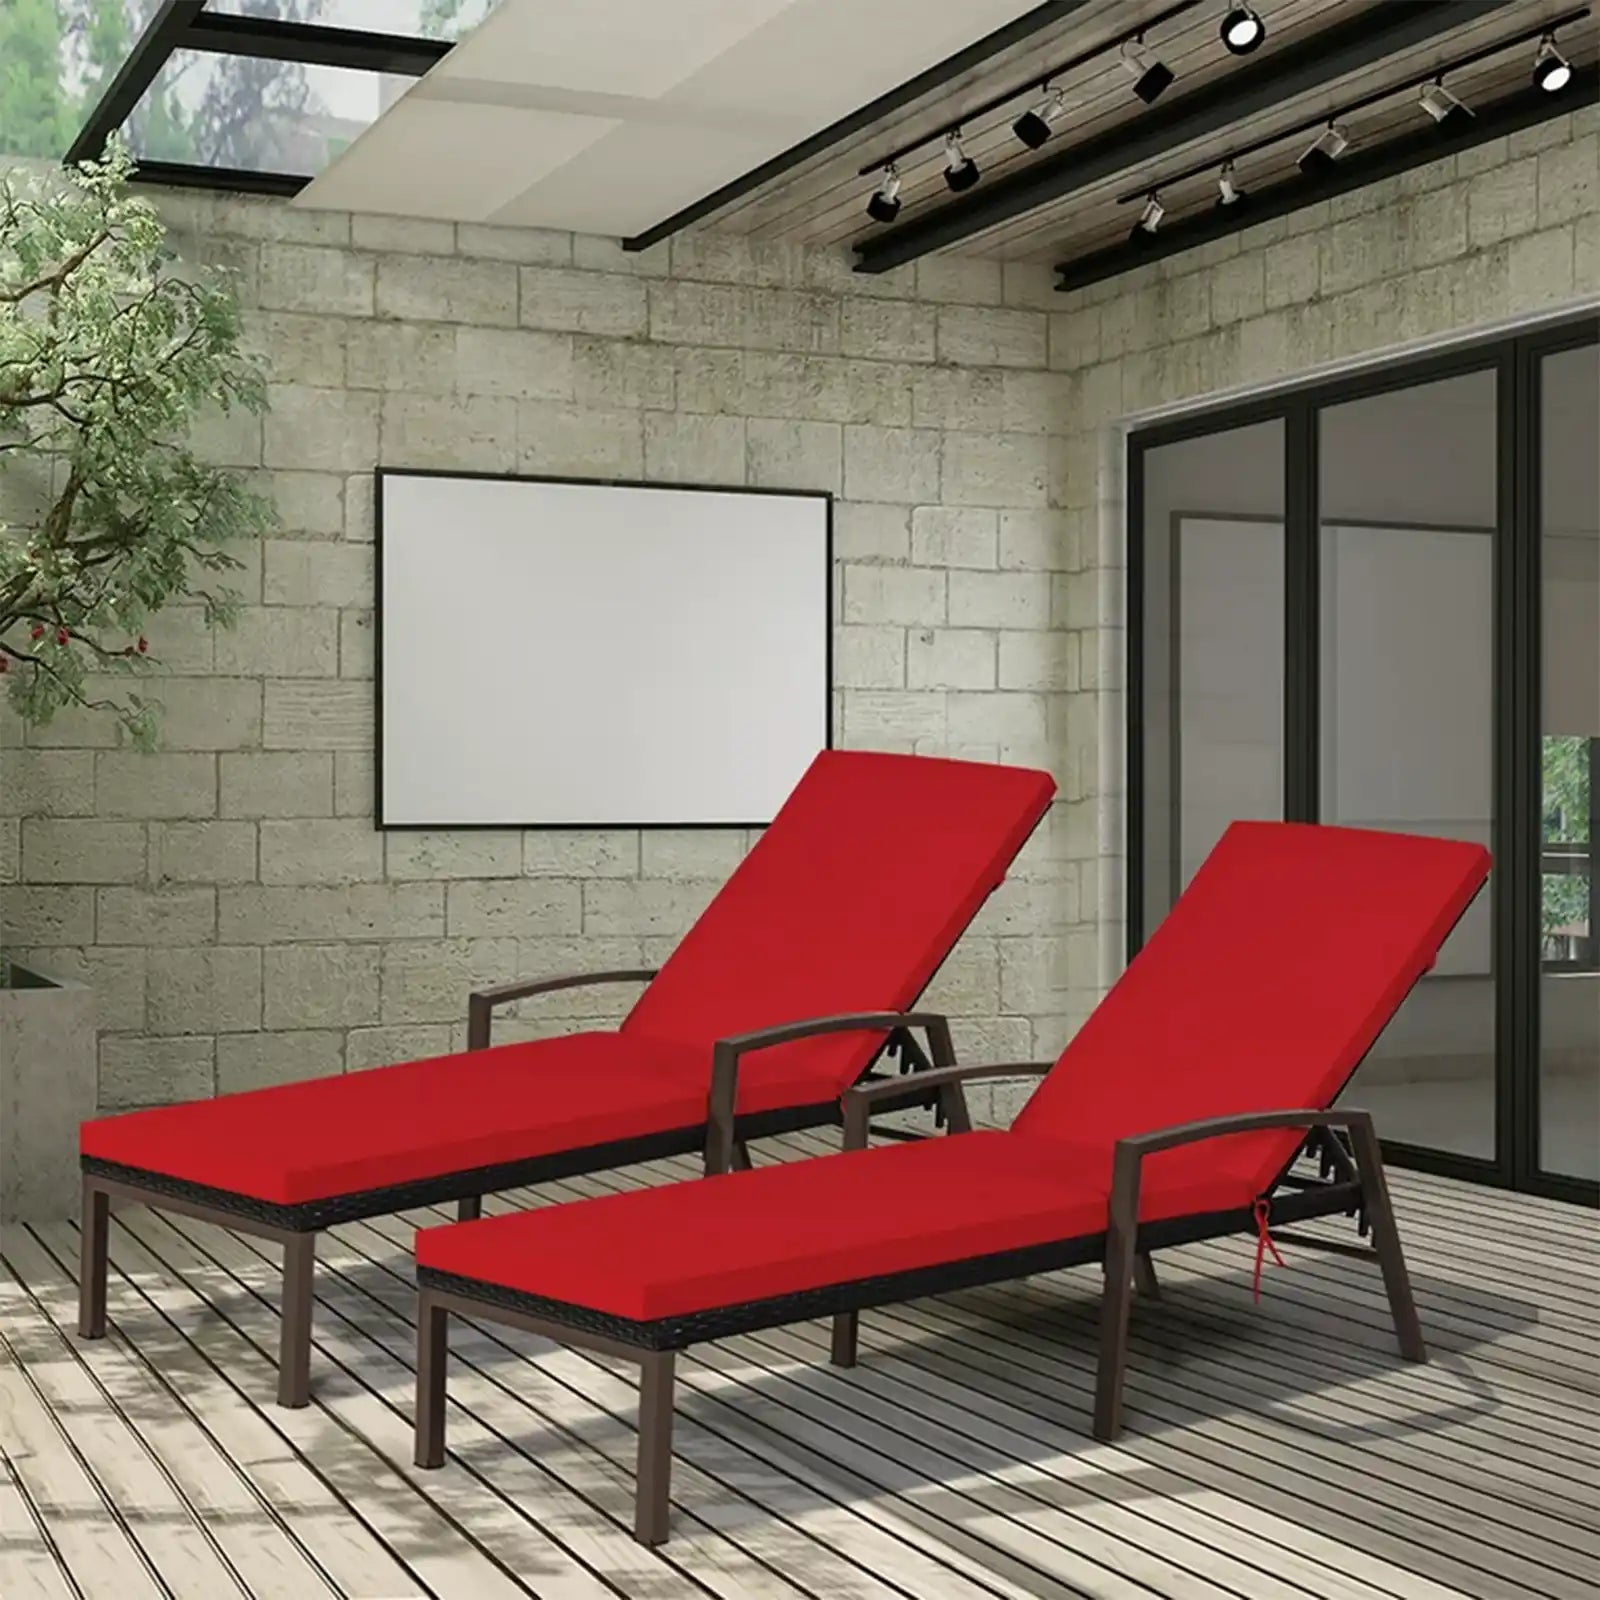 Chaise Lounge, silla, sillón reclinable y respaldo ajustable de ratán para patio